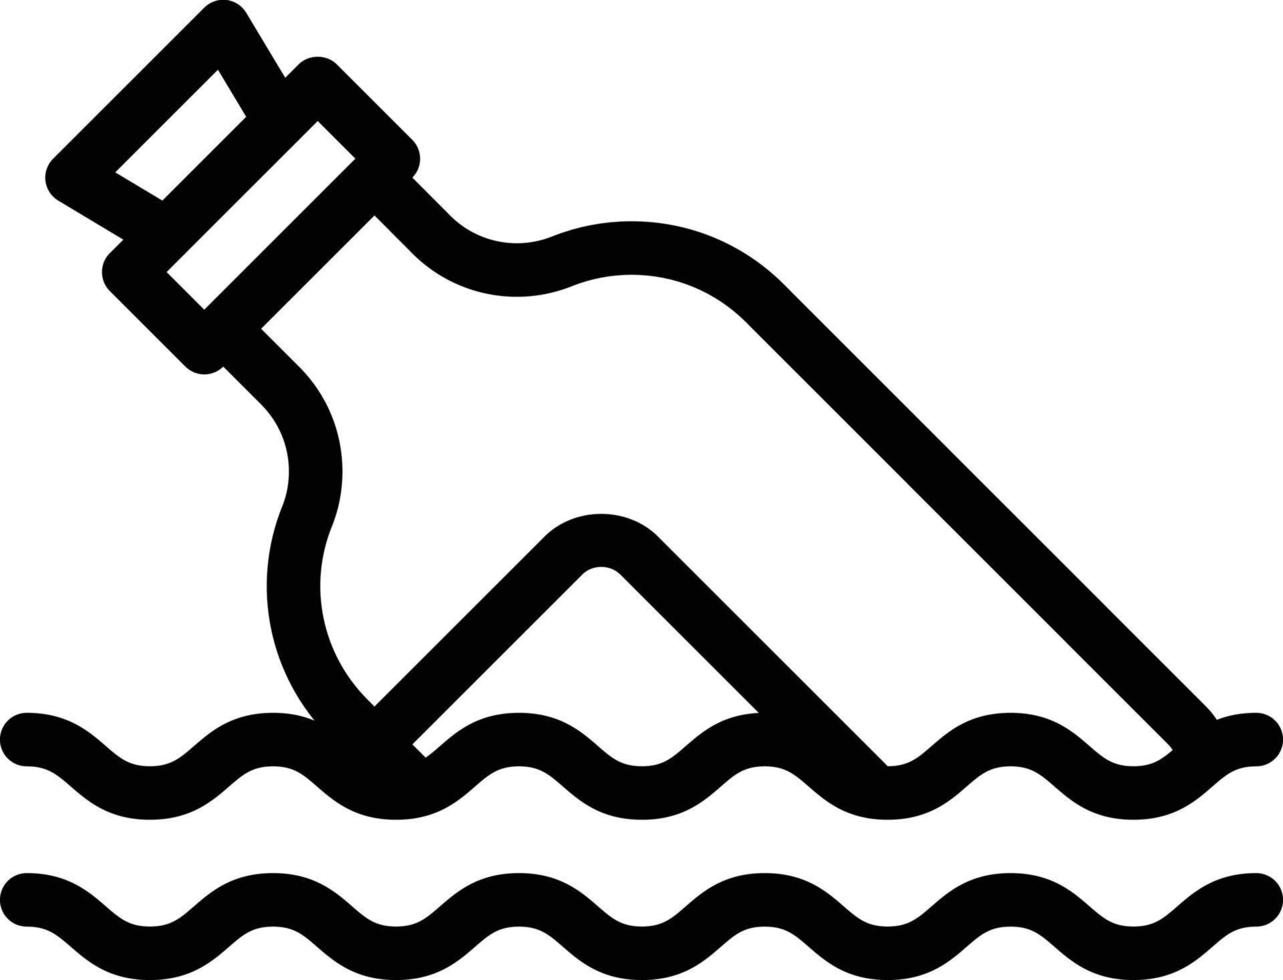 illustrazione vettoriale di inquinamento dell'acqua su uno sfondo simboli di qualità premium icone vettoriali per concept e design grafico.